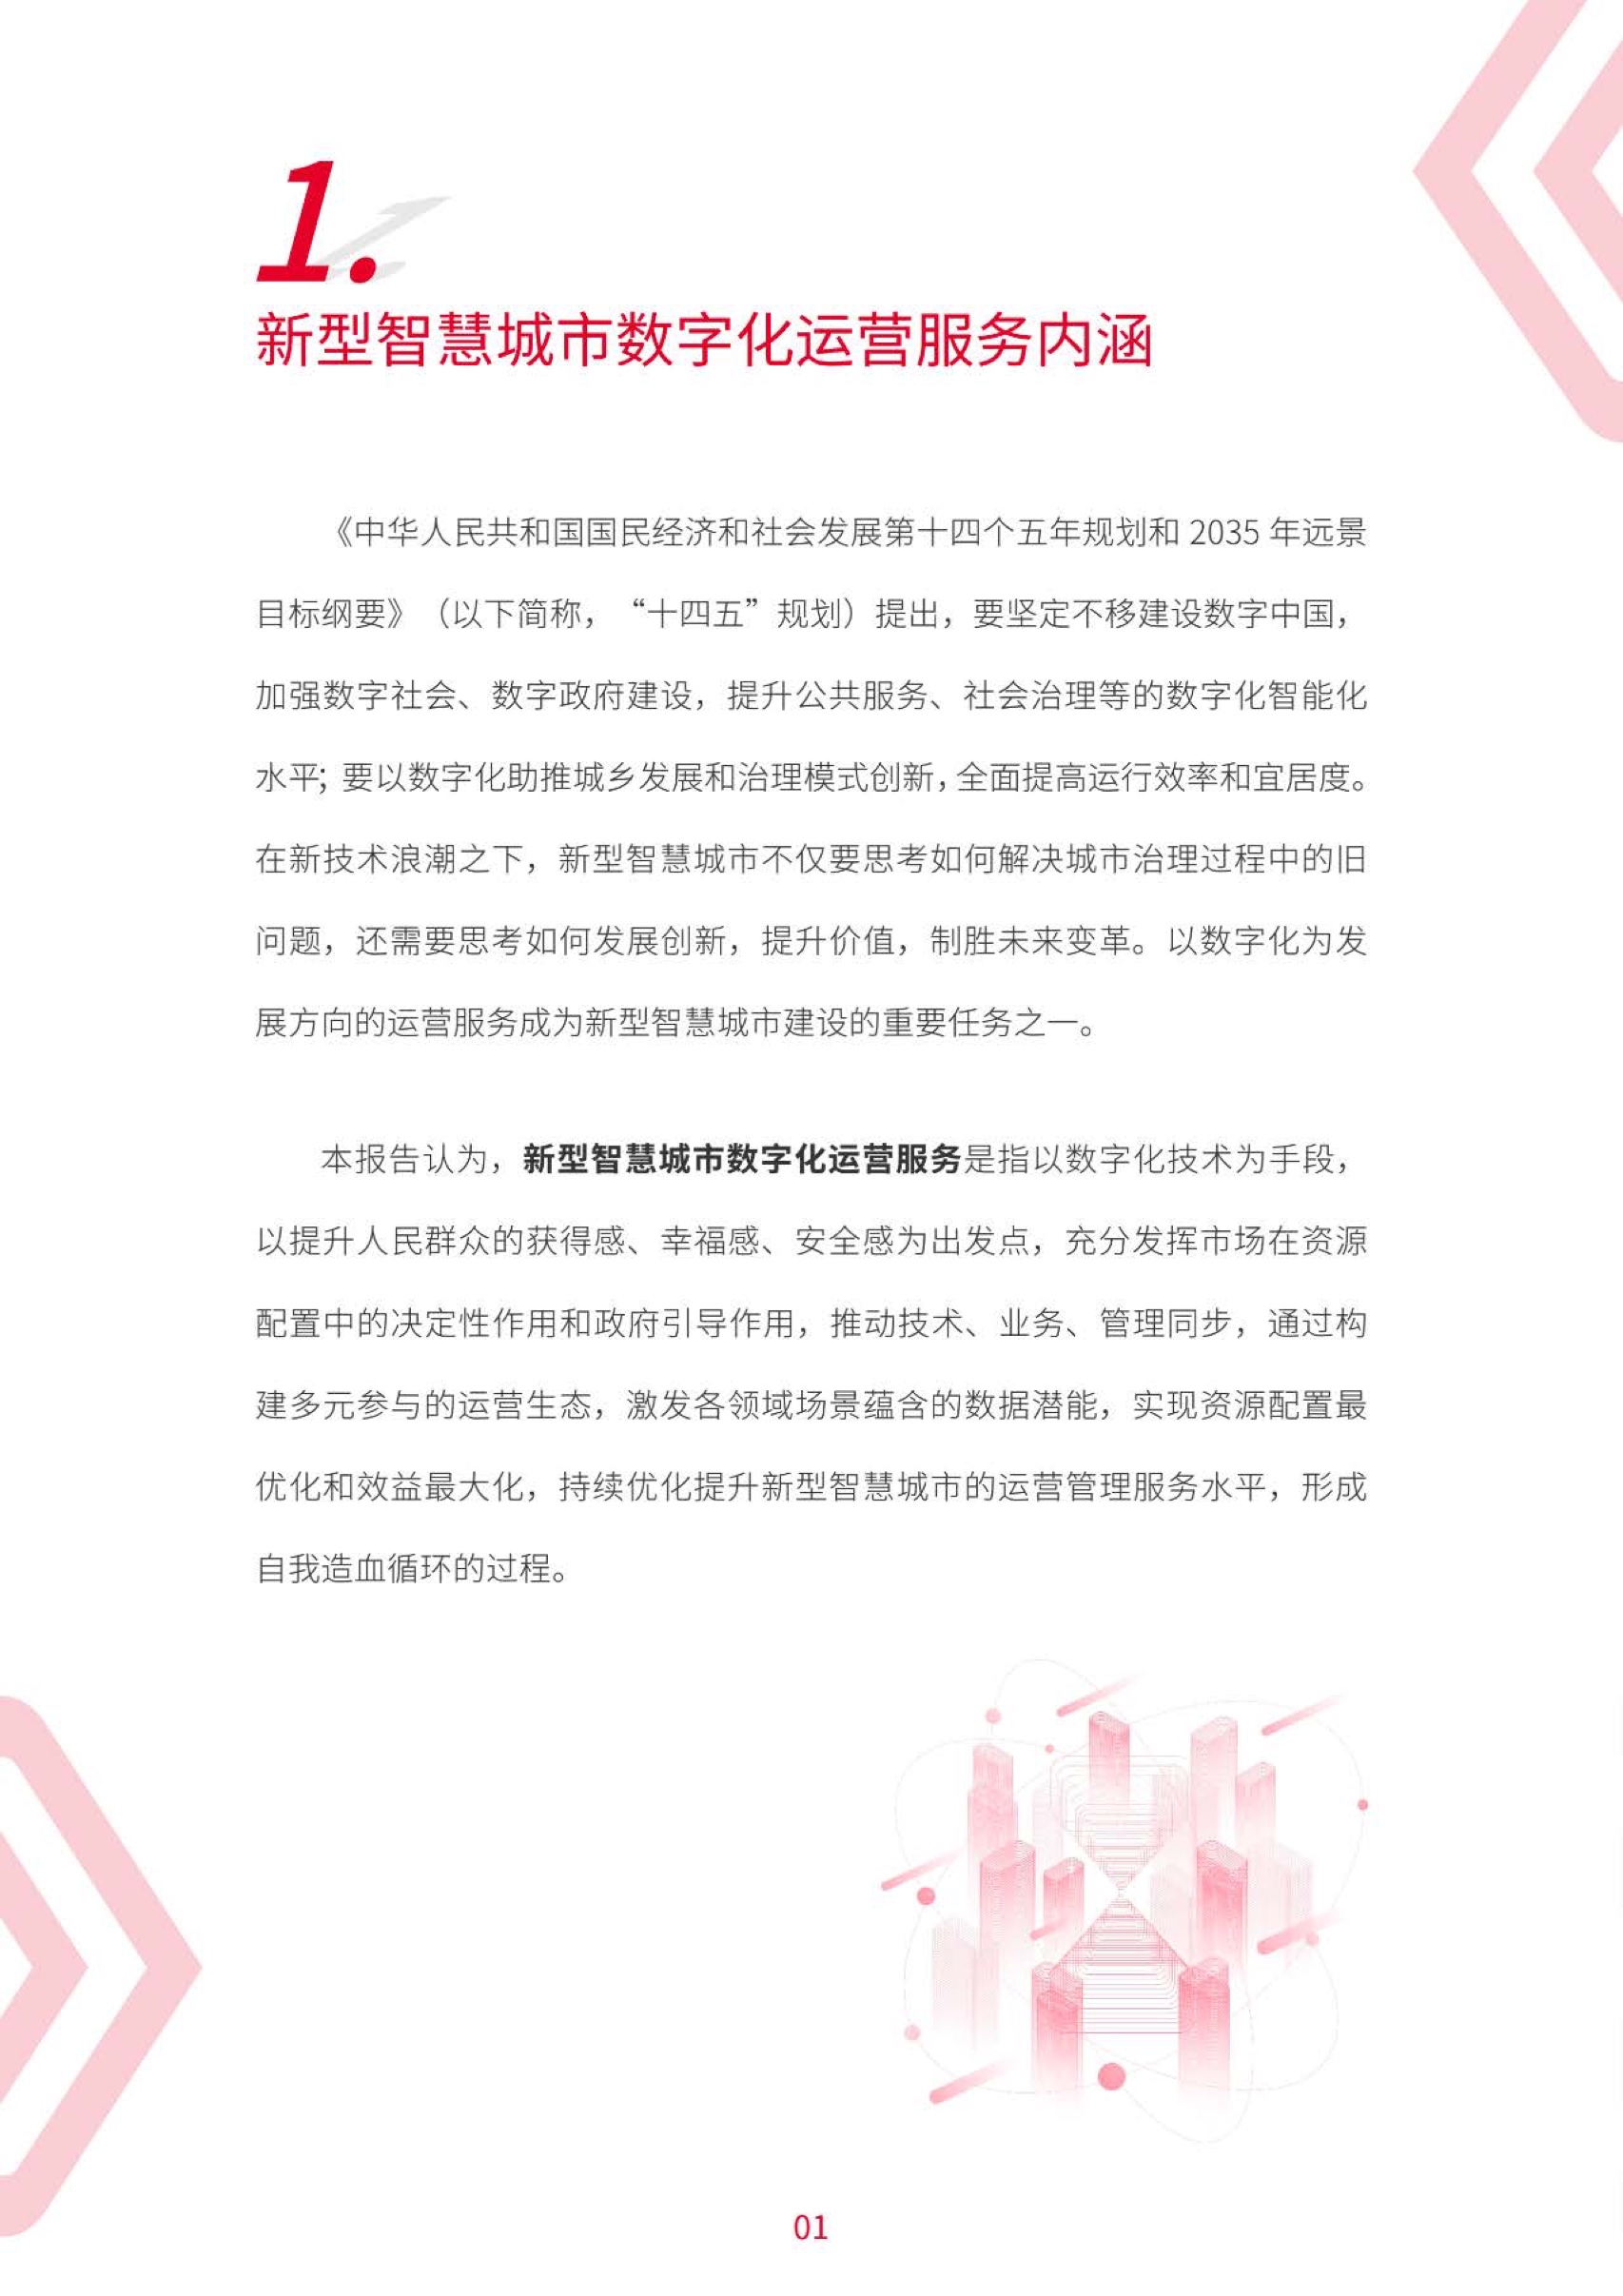 2022年中国联通新型智慧城市数字化运营服务白皮书